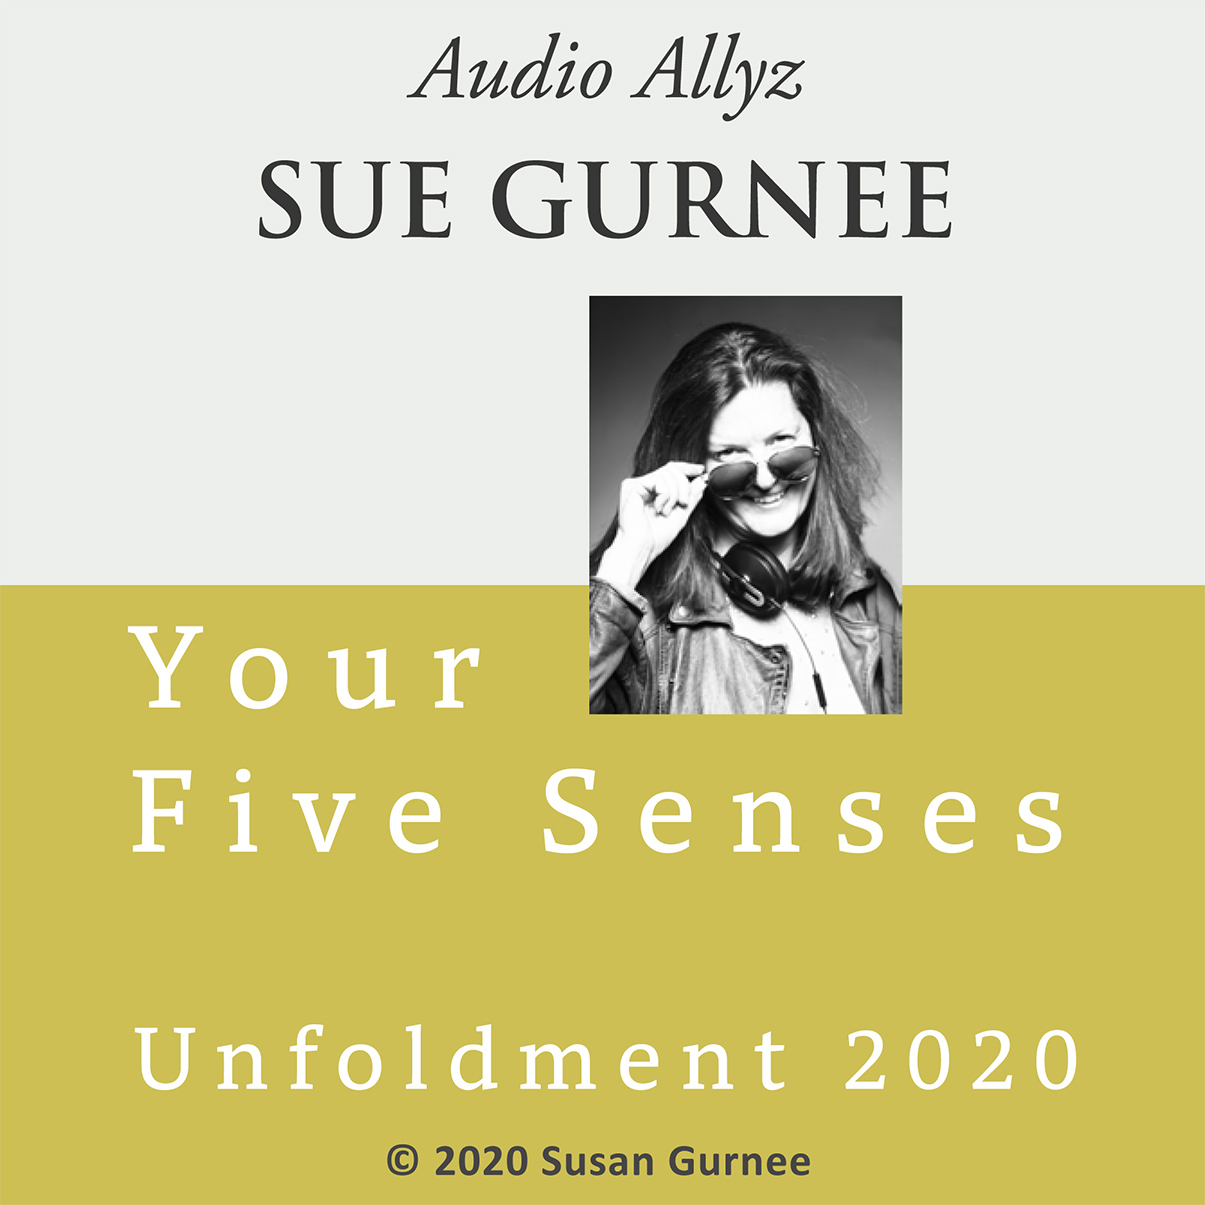 Audio Allyz Sue Gurnee - Unfoldment 2020 - Your Five Senses